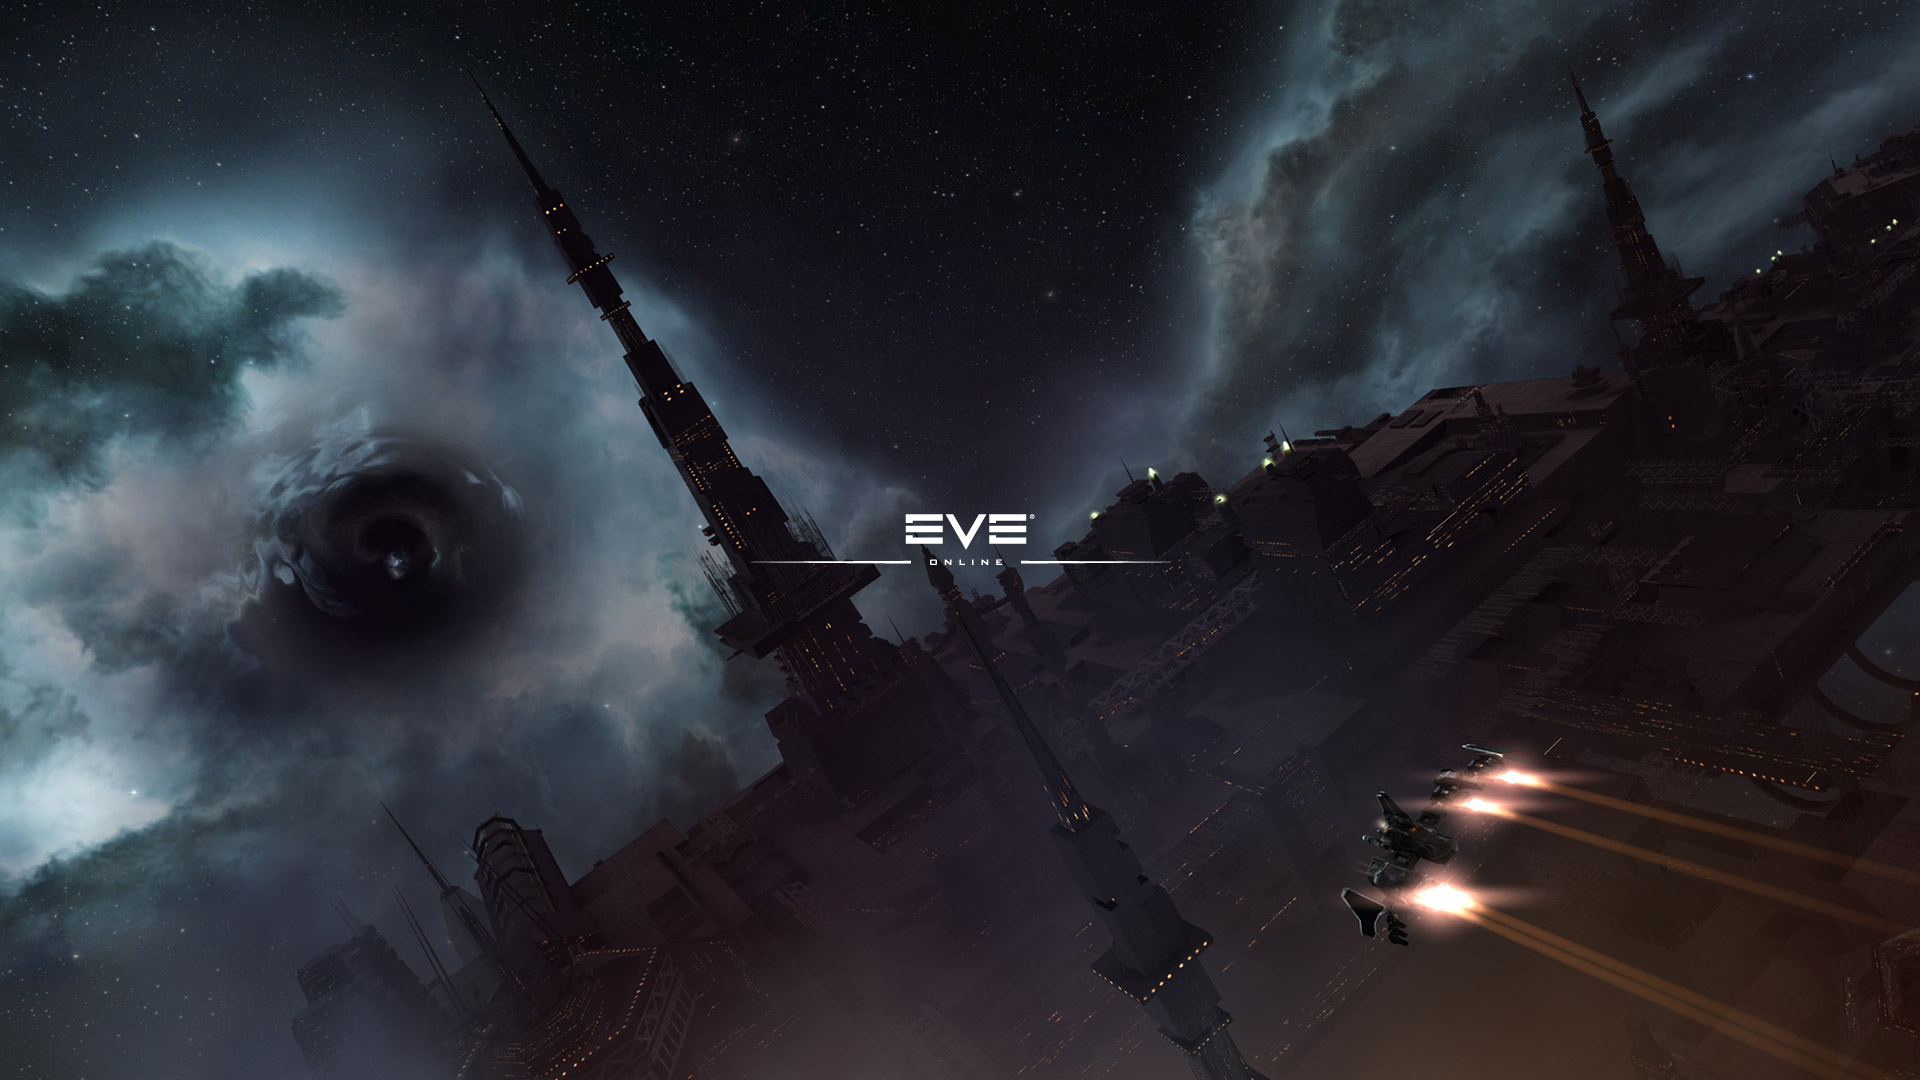 Eve Online Wallpaper In